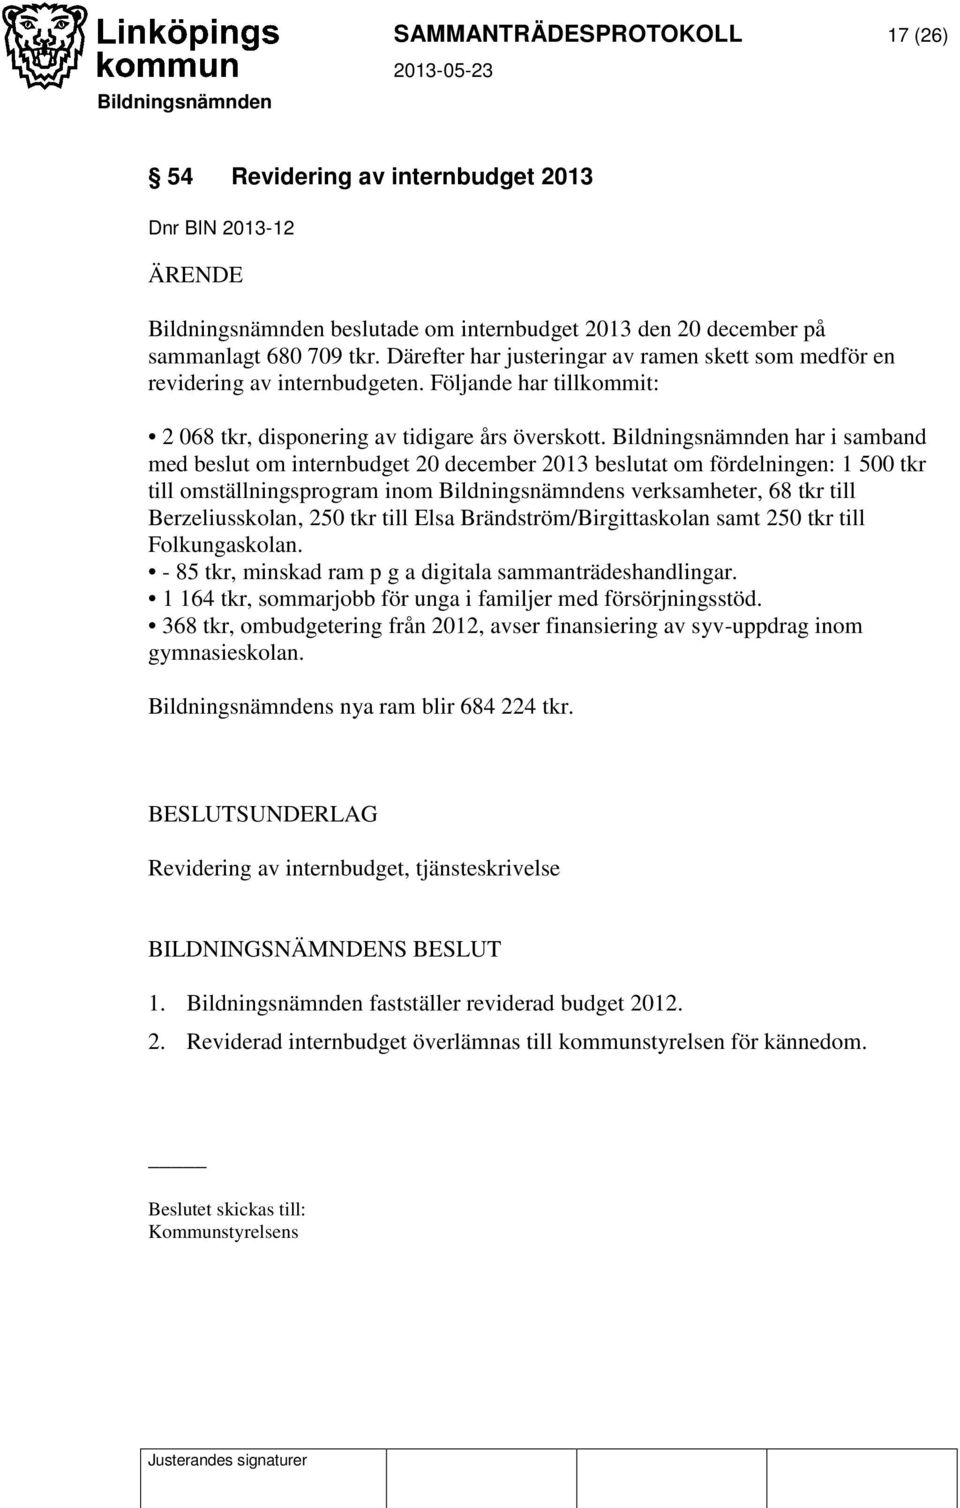 Bildningsnämnden har i samband med beslut om internbudget 20 december 2013 beslutat om fördelningen: 1 500 tkr till omställningsprogram inom Bildningsnämndens verksamheter, 68 tkr till